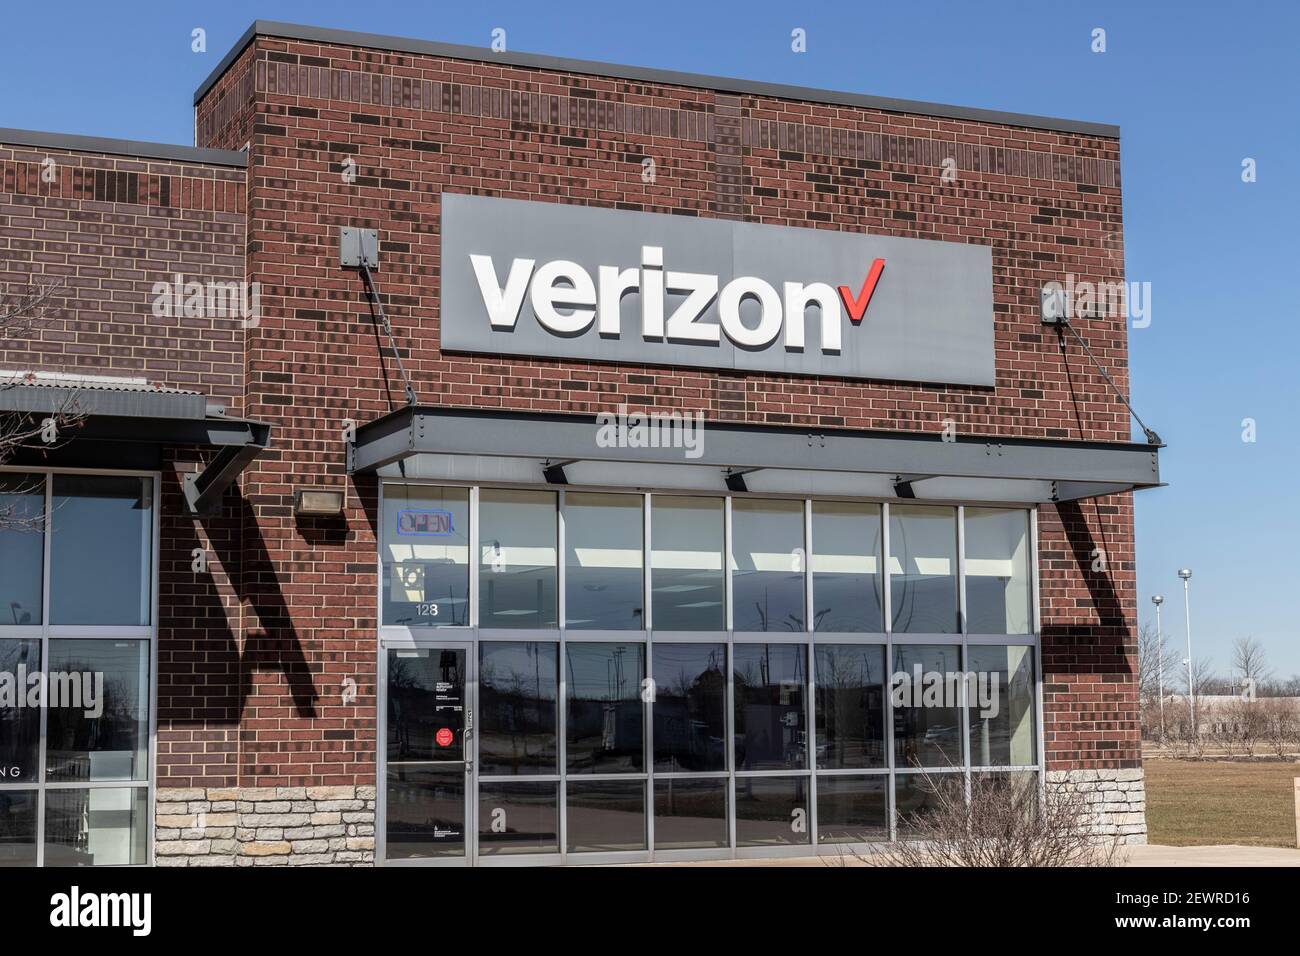 Indianapolis - Circa März 2021: Verizon Wireless Retail Location. Verizon liefert drahtlose Glasfaserverbindungen mit hoher Kapazität und 5G-Kommunikation. Stockfoto